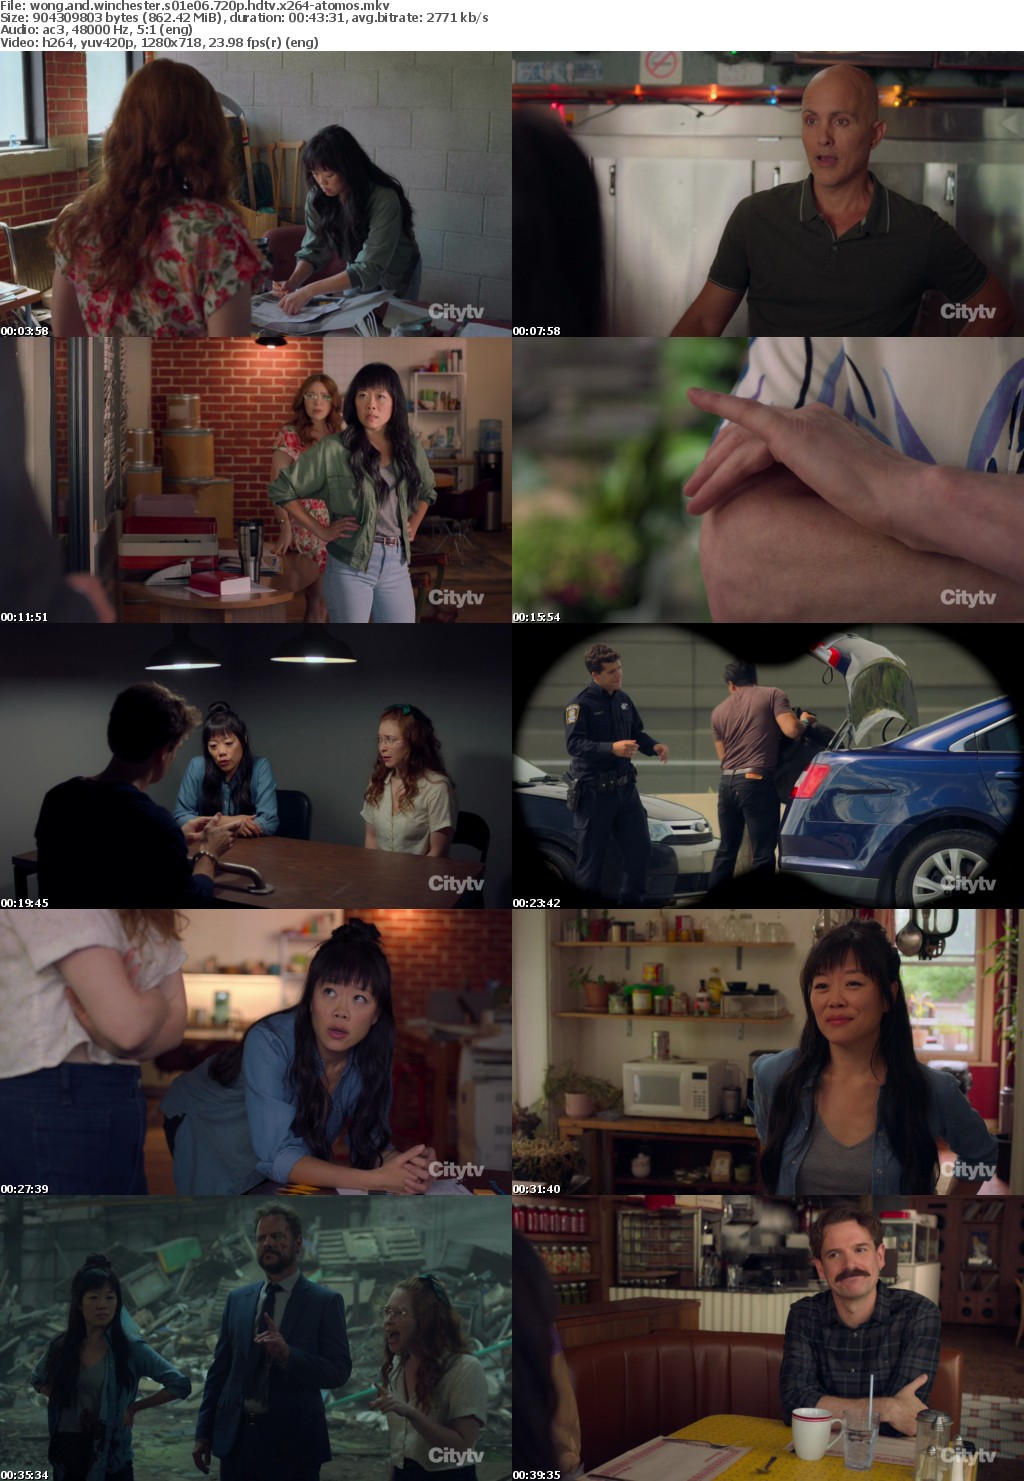 Wong and Winchester S01E06 720p HDTV x264-ATOMOS